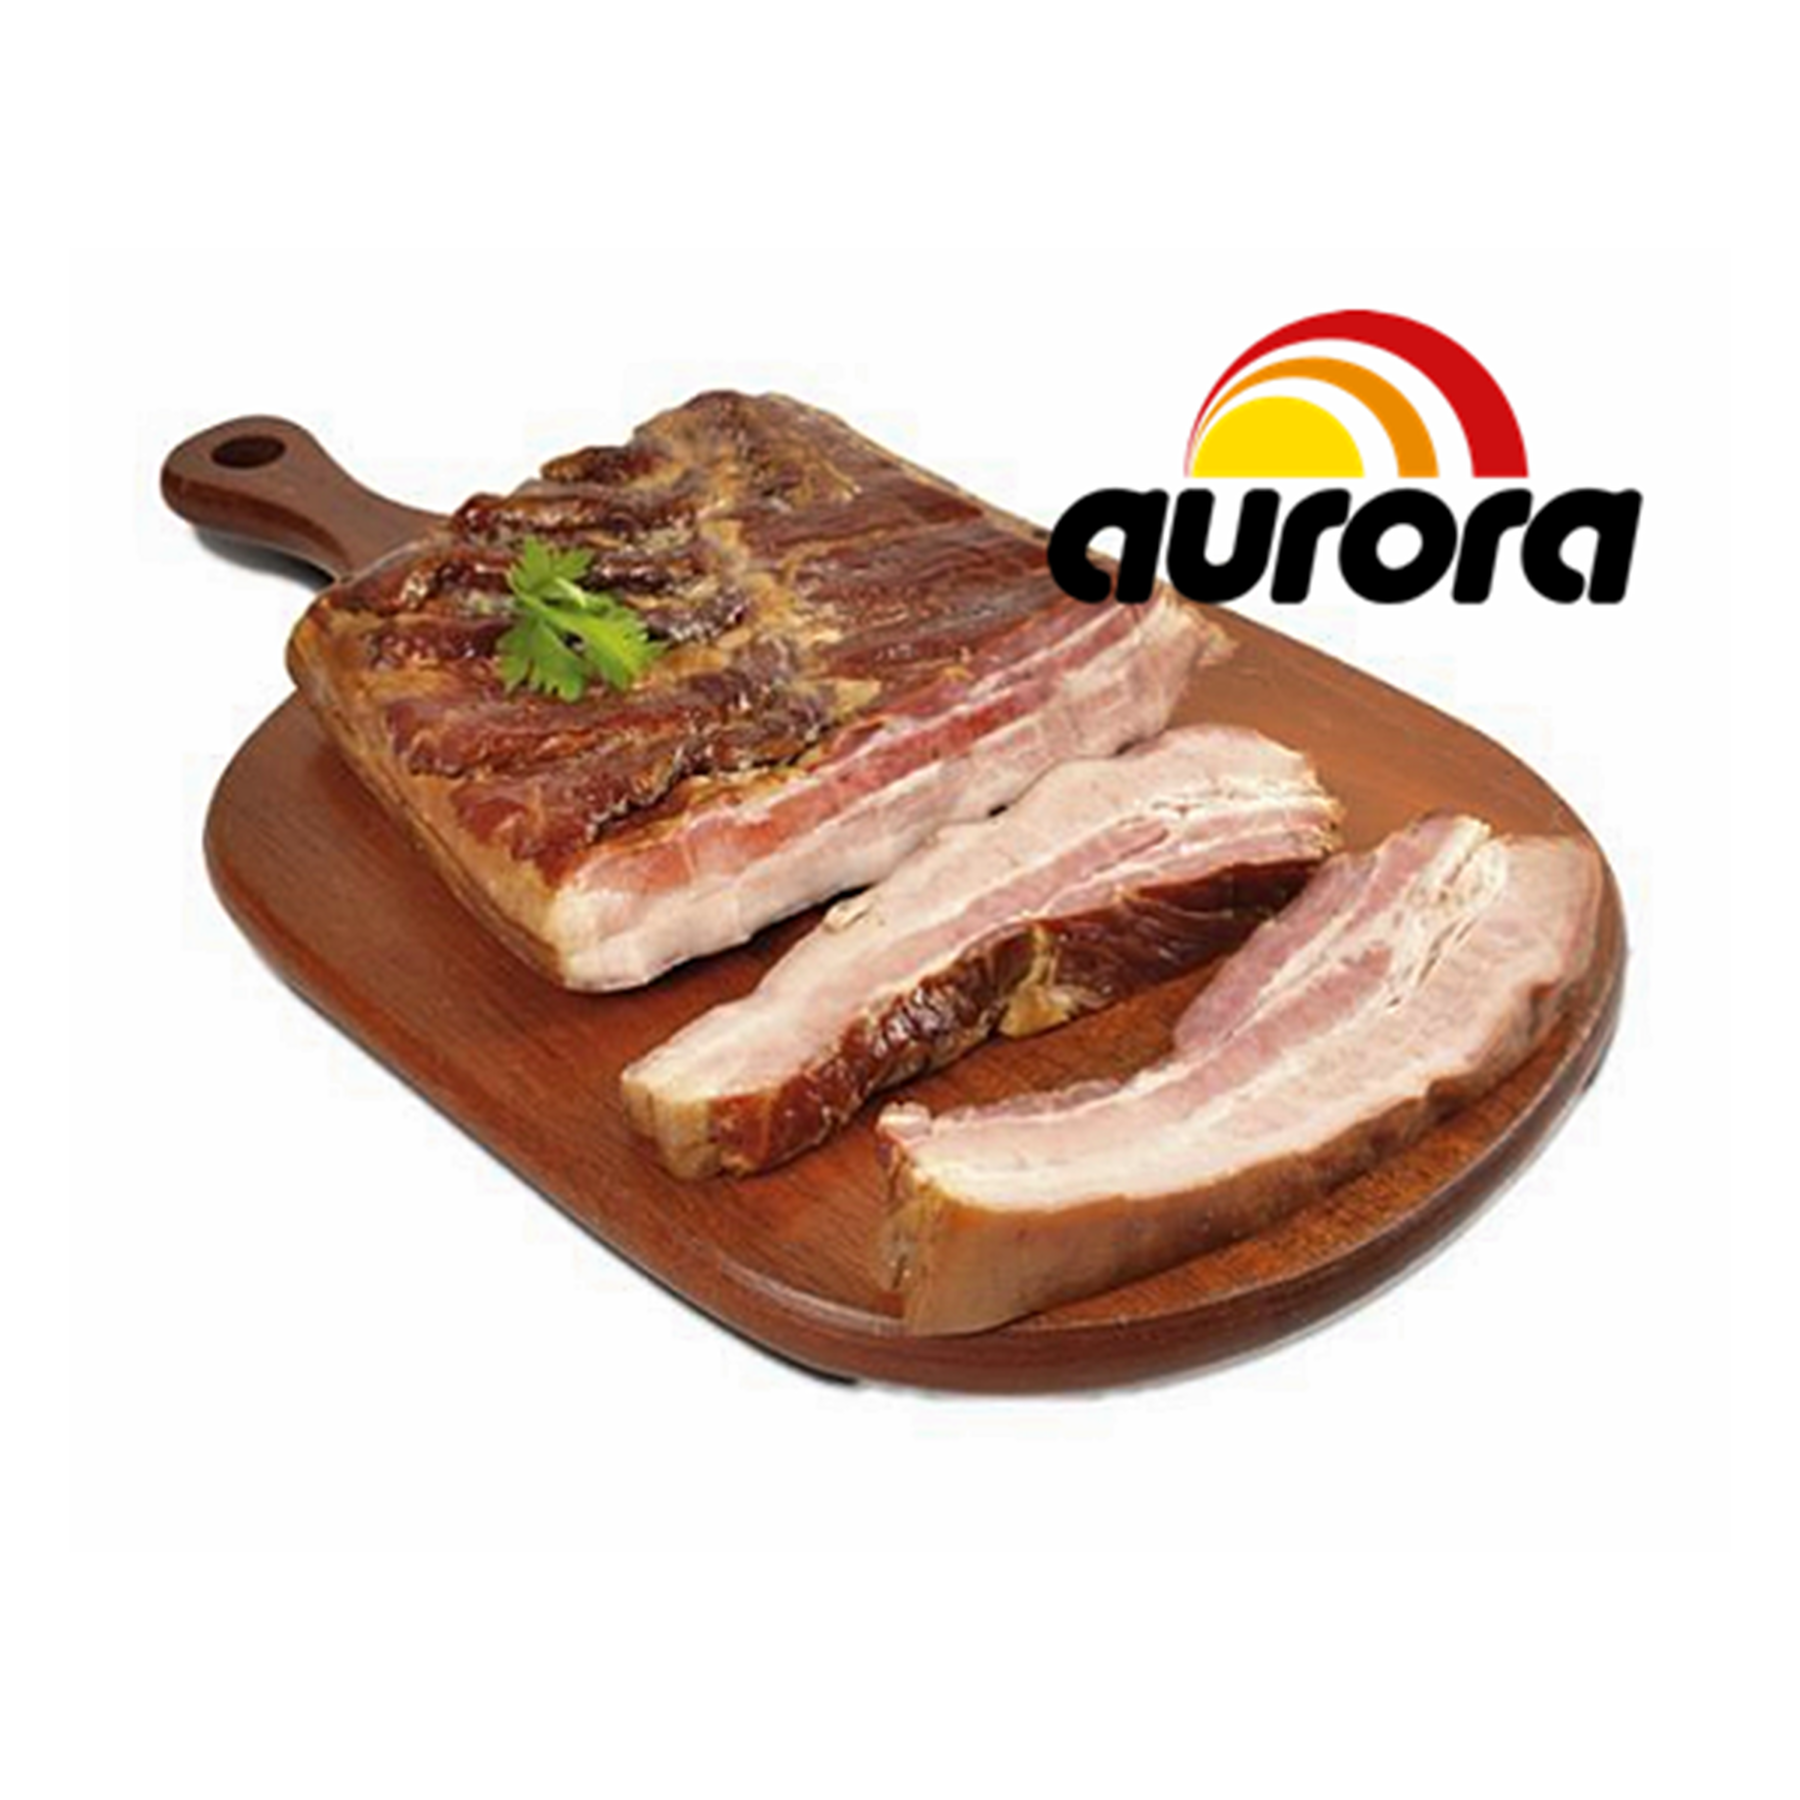 Bacon Aurora Defumado aprox. 350g